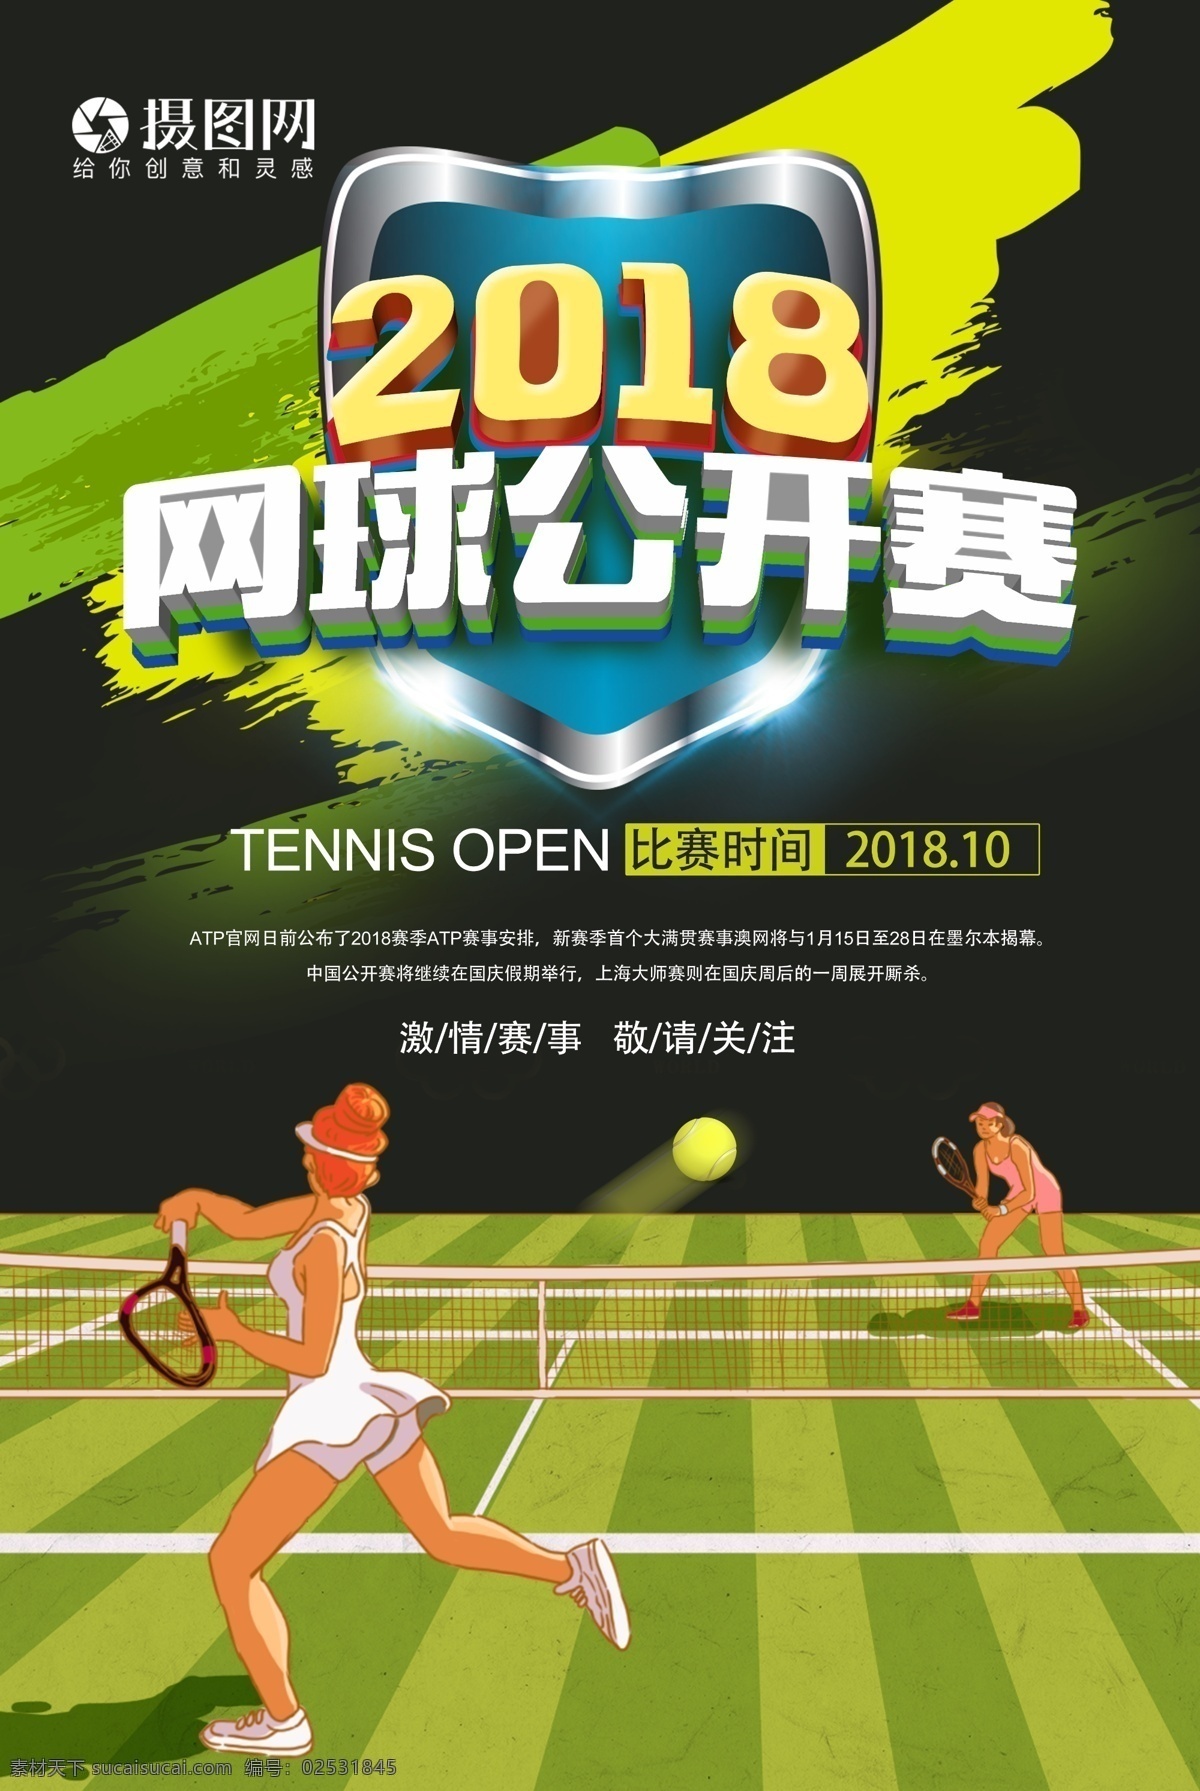 2018 网球 公开赛 海报 网球比赛 体育 运动海报 激情 国网